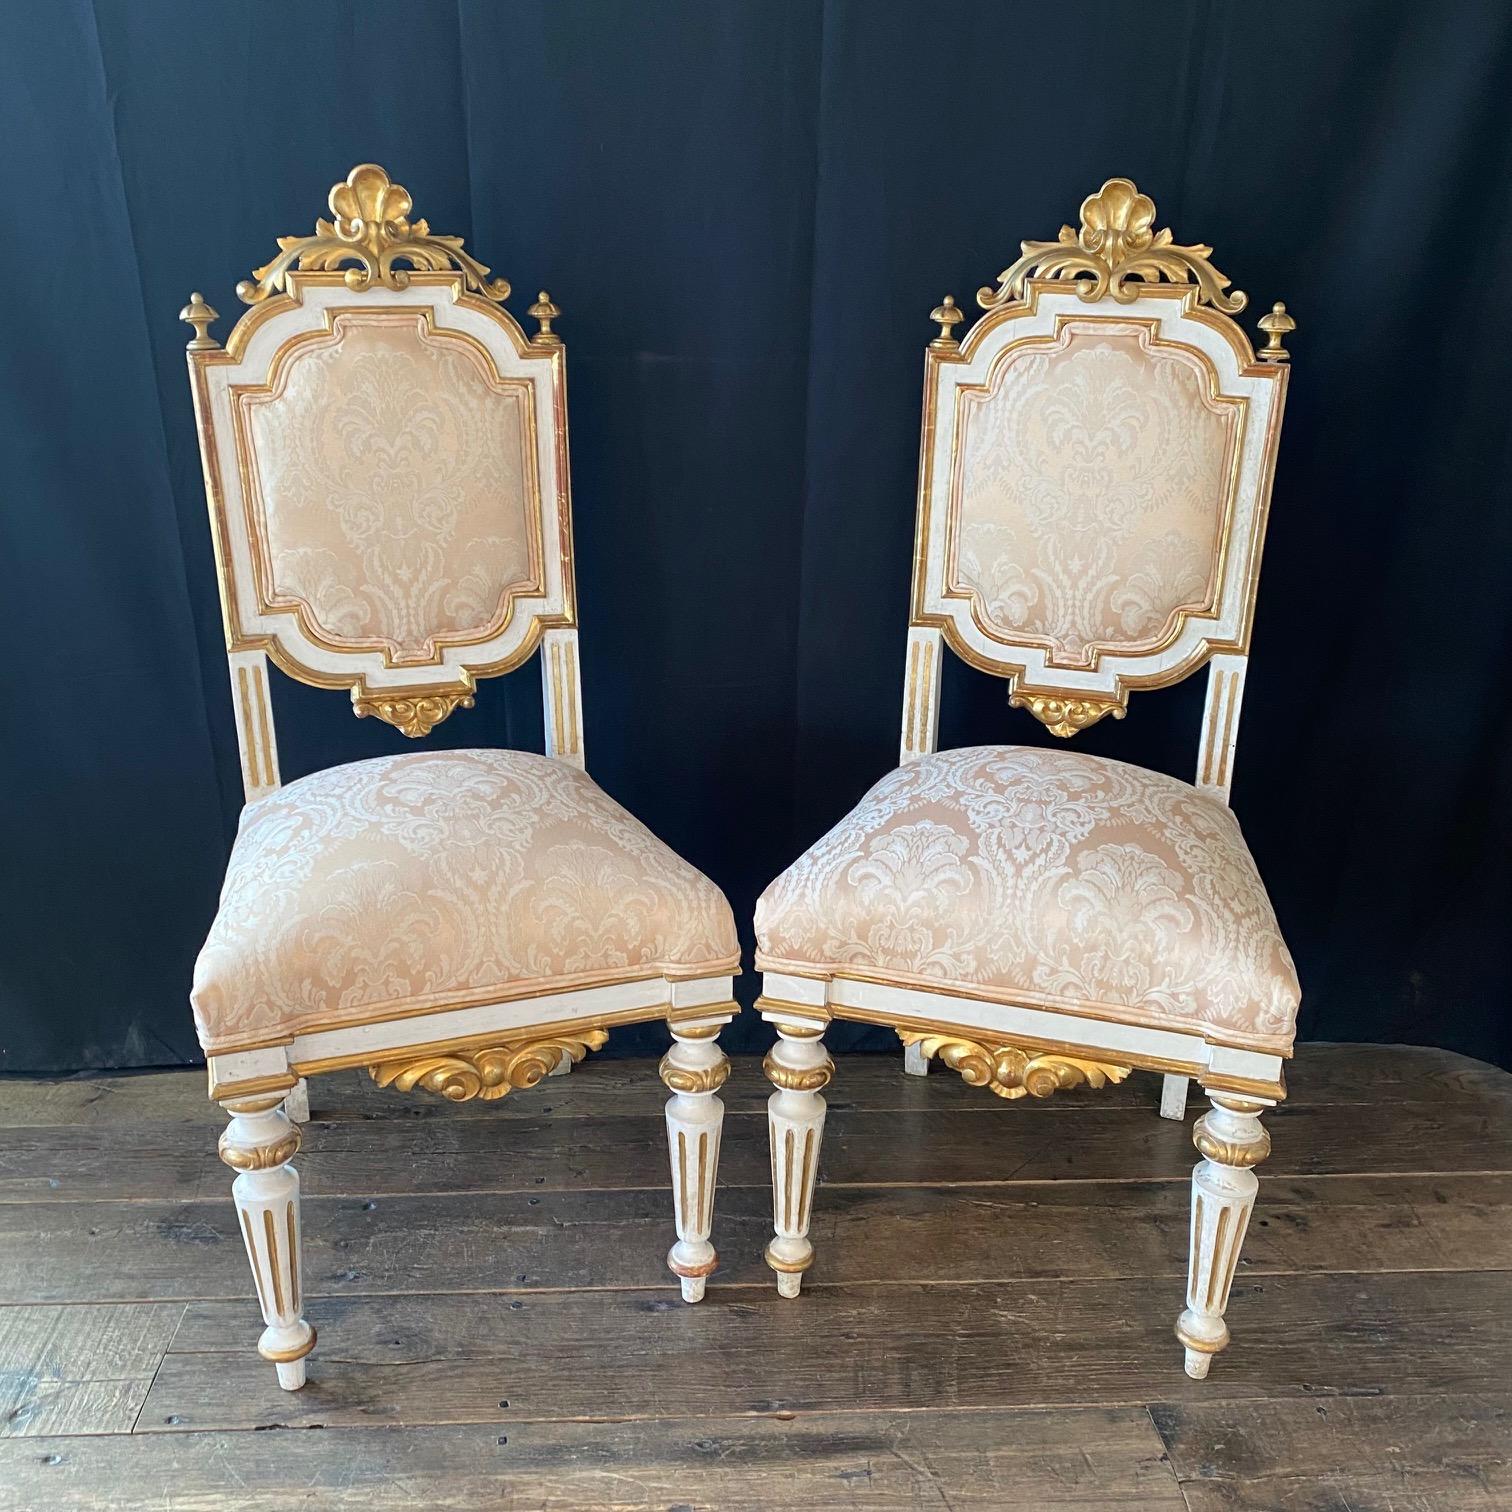 Ein Satz von vier reich geschnitzten italienischen, venezianischen Beistell- oder Esszimmerstühlen aus dem 19. Jahrhundert mit originaler, reich vergoldeter Farbe. Die Stühle stehen auf hübschen, geriffelten Beinen, und Rock und Rückenlehne weisen